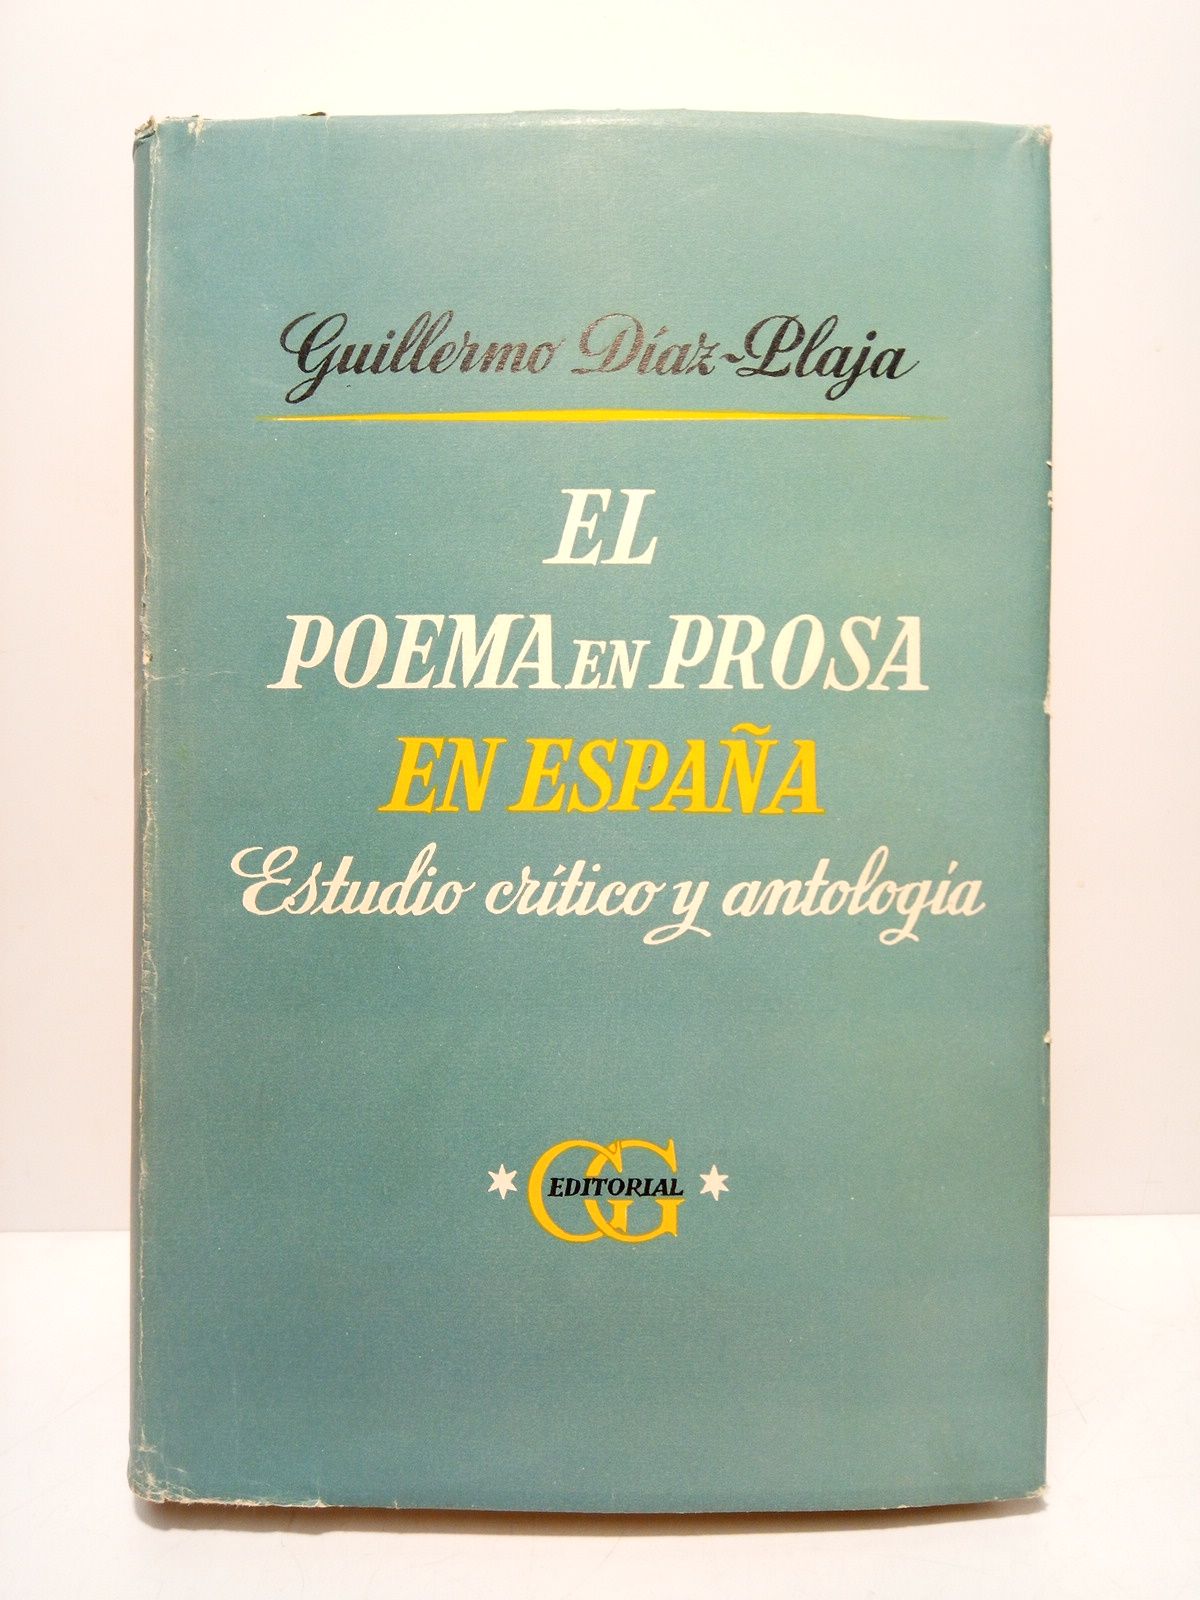 DIAZ-PLAJA, Guillermo - El poema en prosa en Espaa. Estudio crtico y antologa